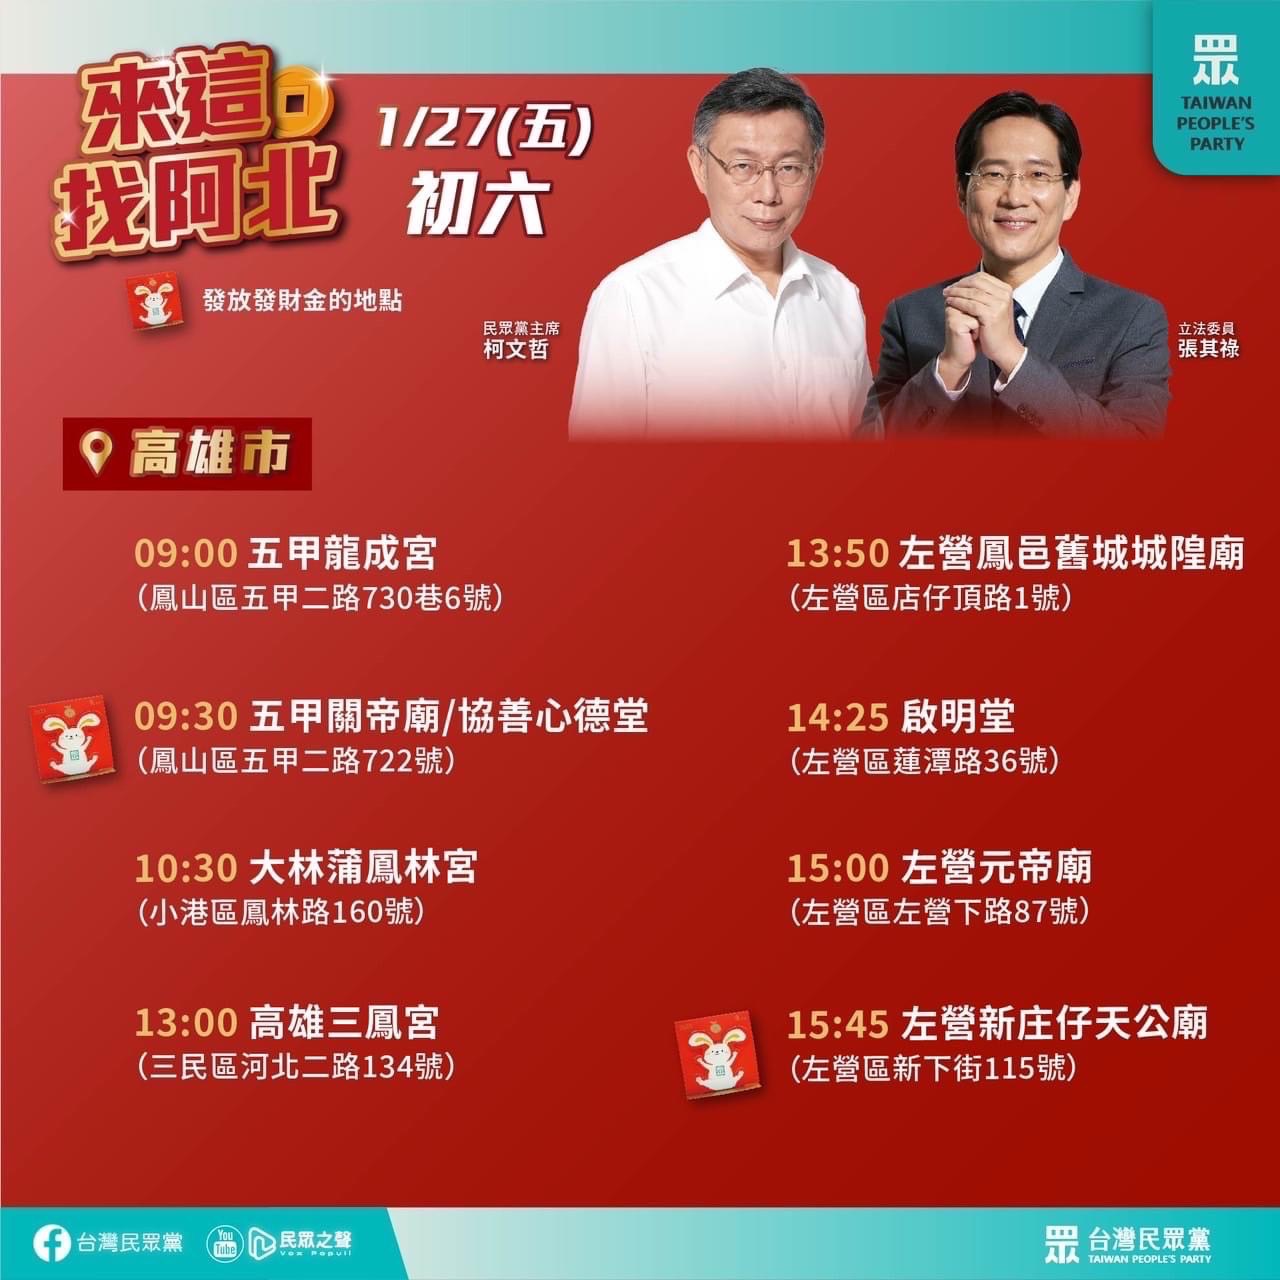 台灣民眾黨主席柯文哲 明天將到高雄走春拜年發紅包